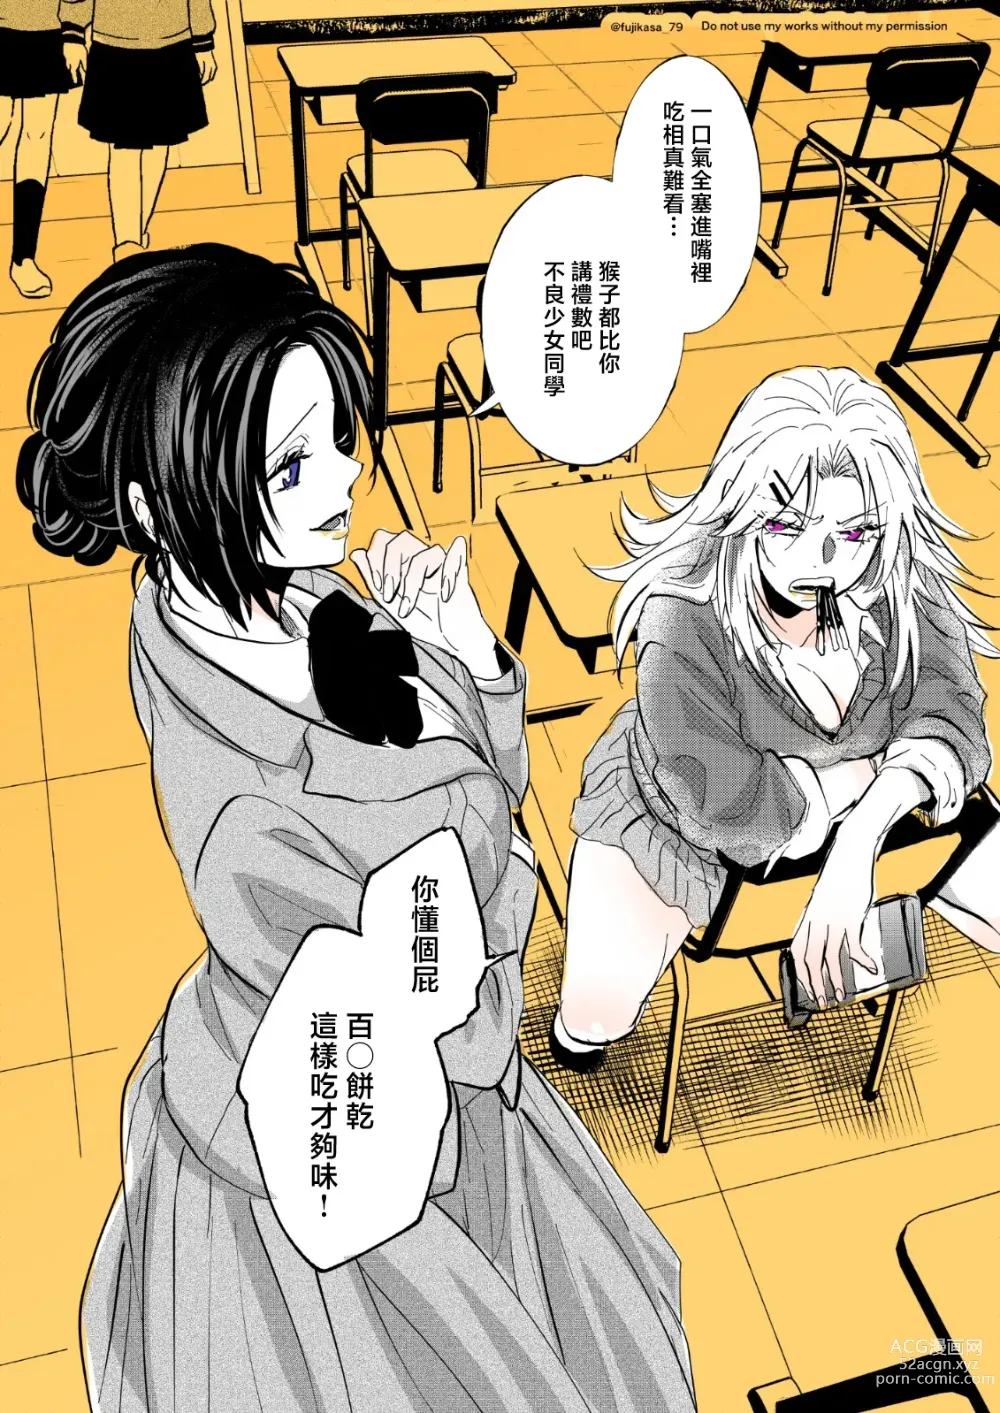 Page 4 of manga 不良少女与委员长关系不好全是演戏